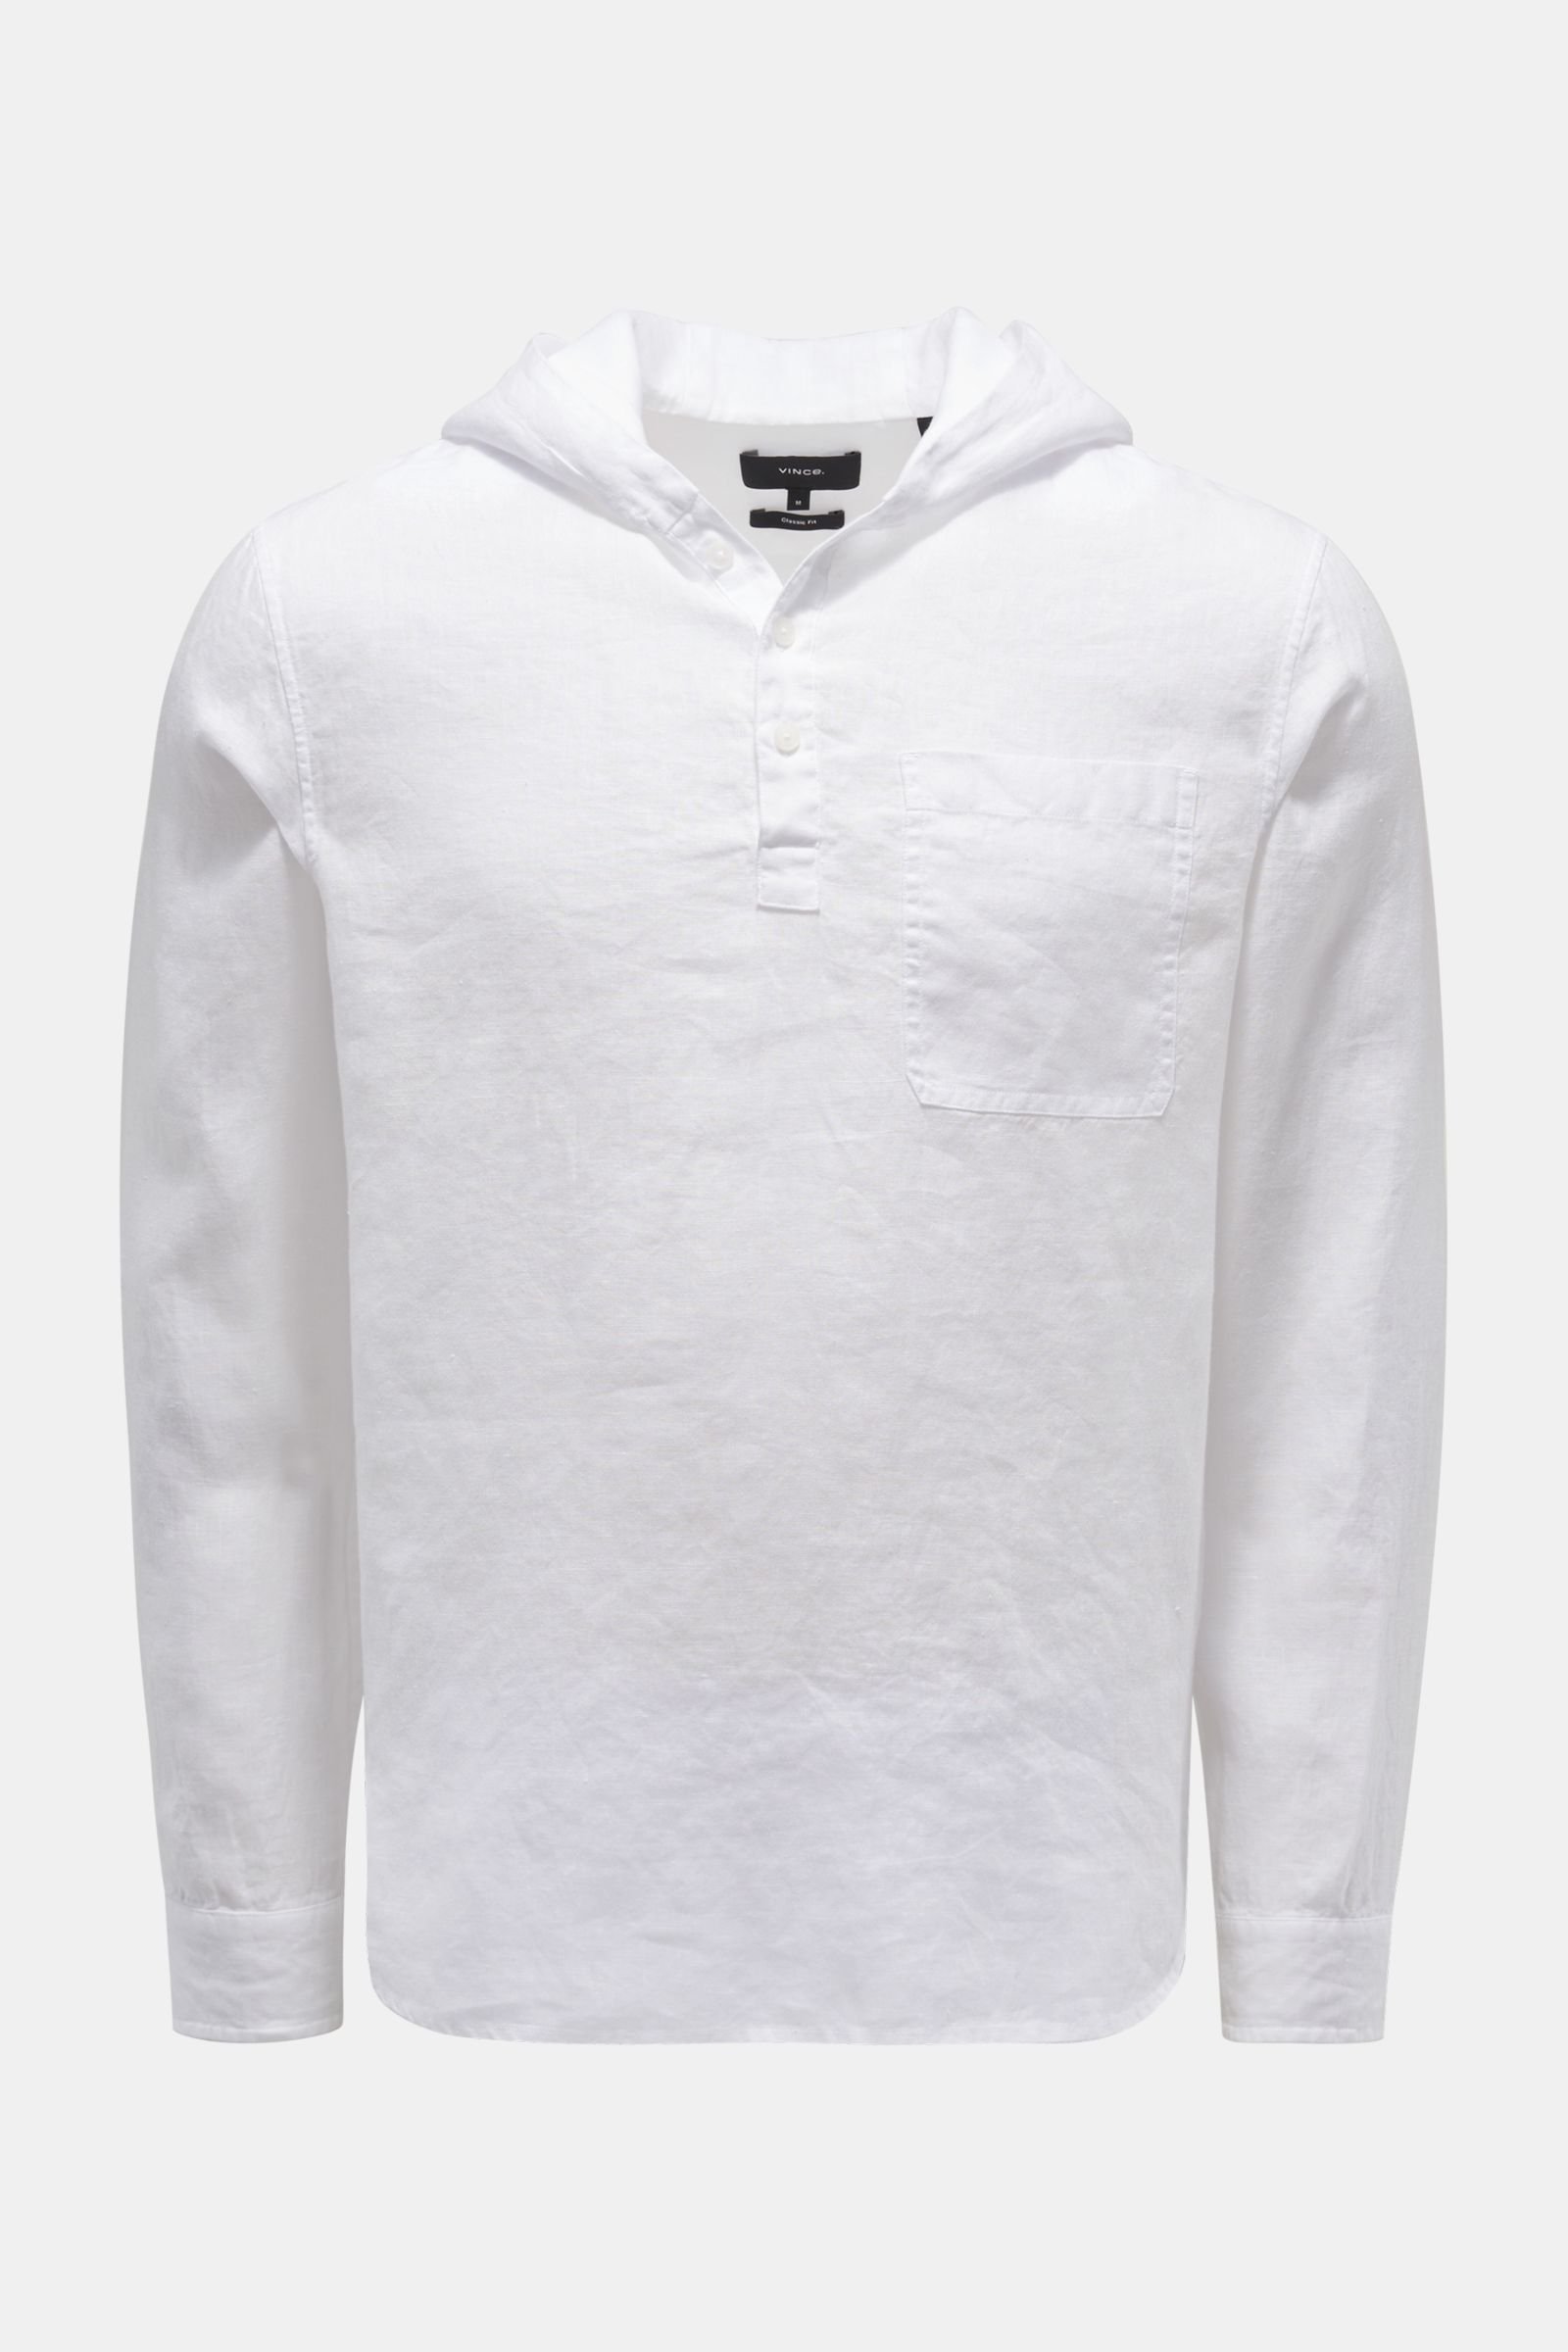 Leinen-Popover-Hemd weiß